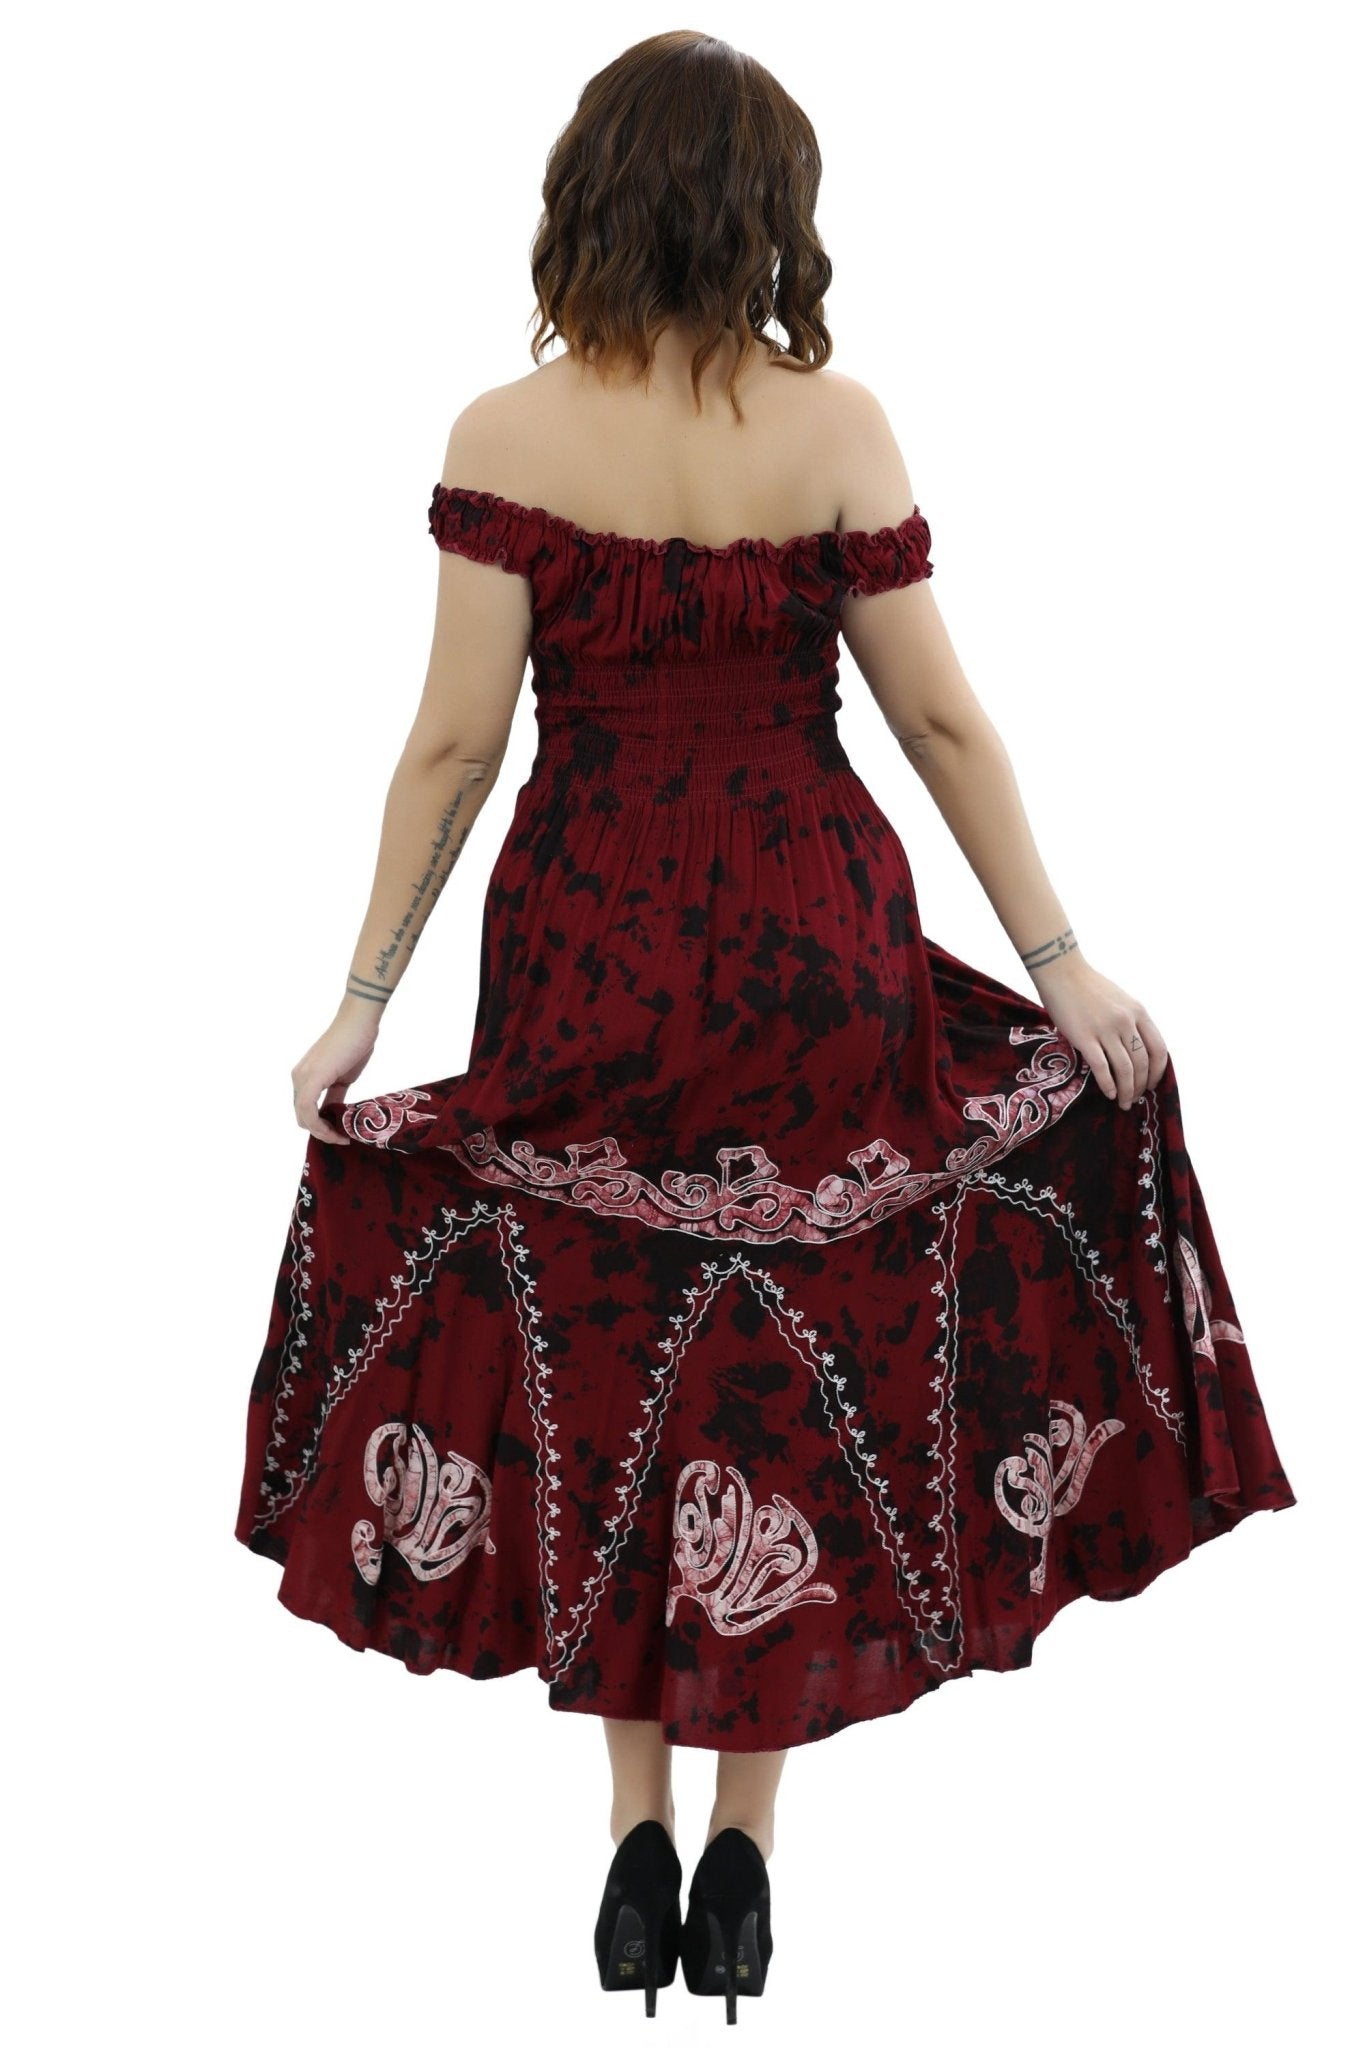 Off Shoulder Batik Print Dress 1429 - Advance Apparels Inc